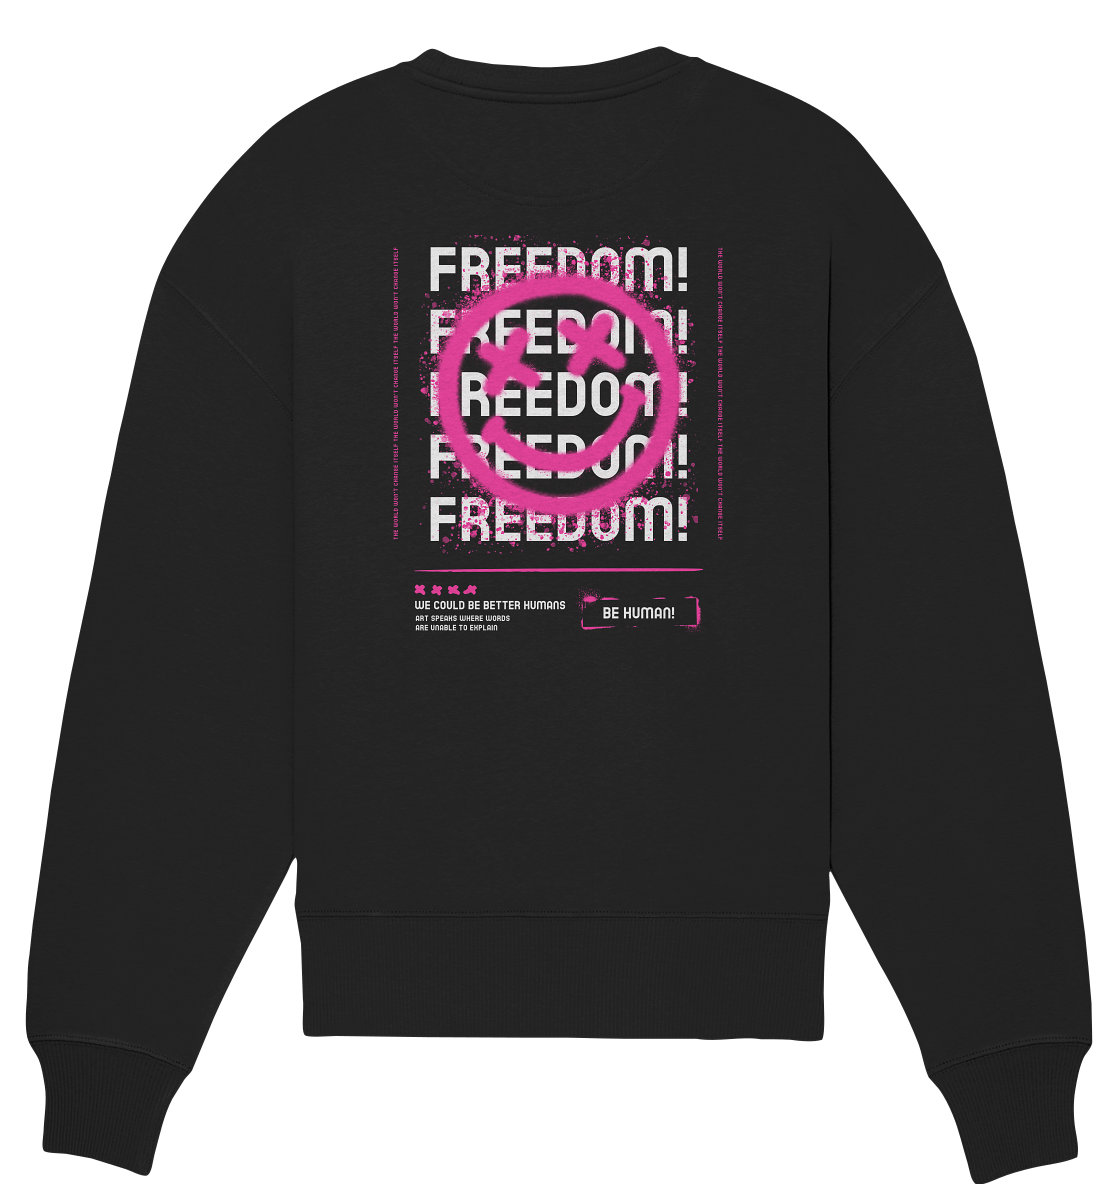 Freedom - Organic Oversized Sweatshirt